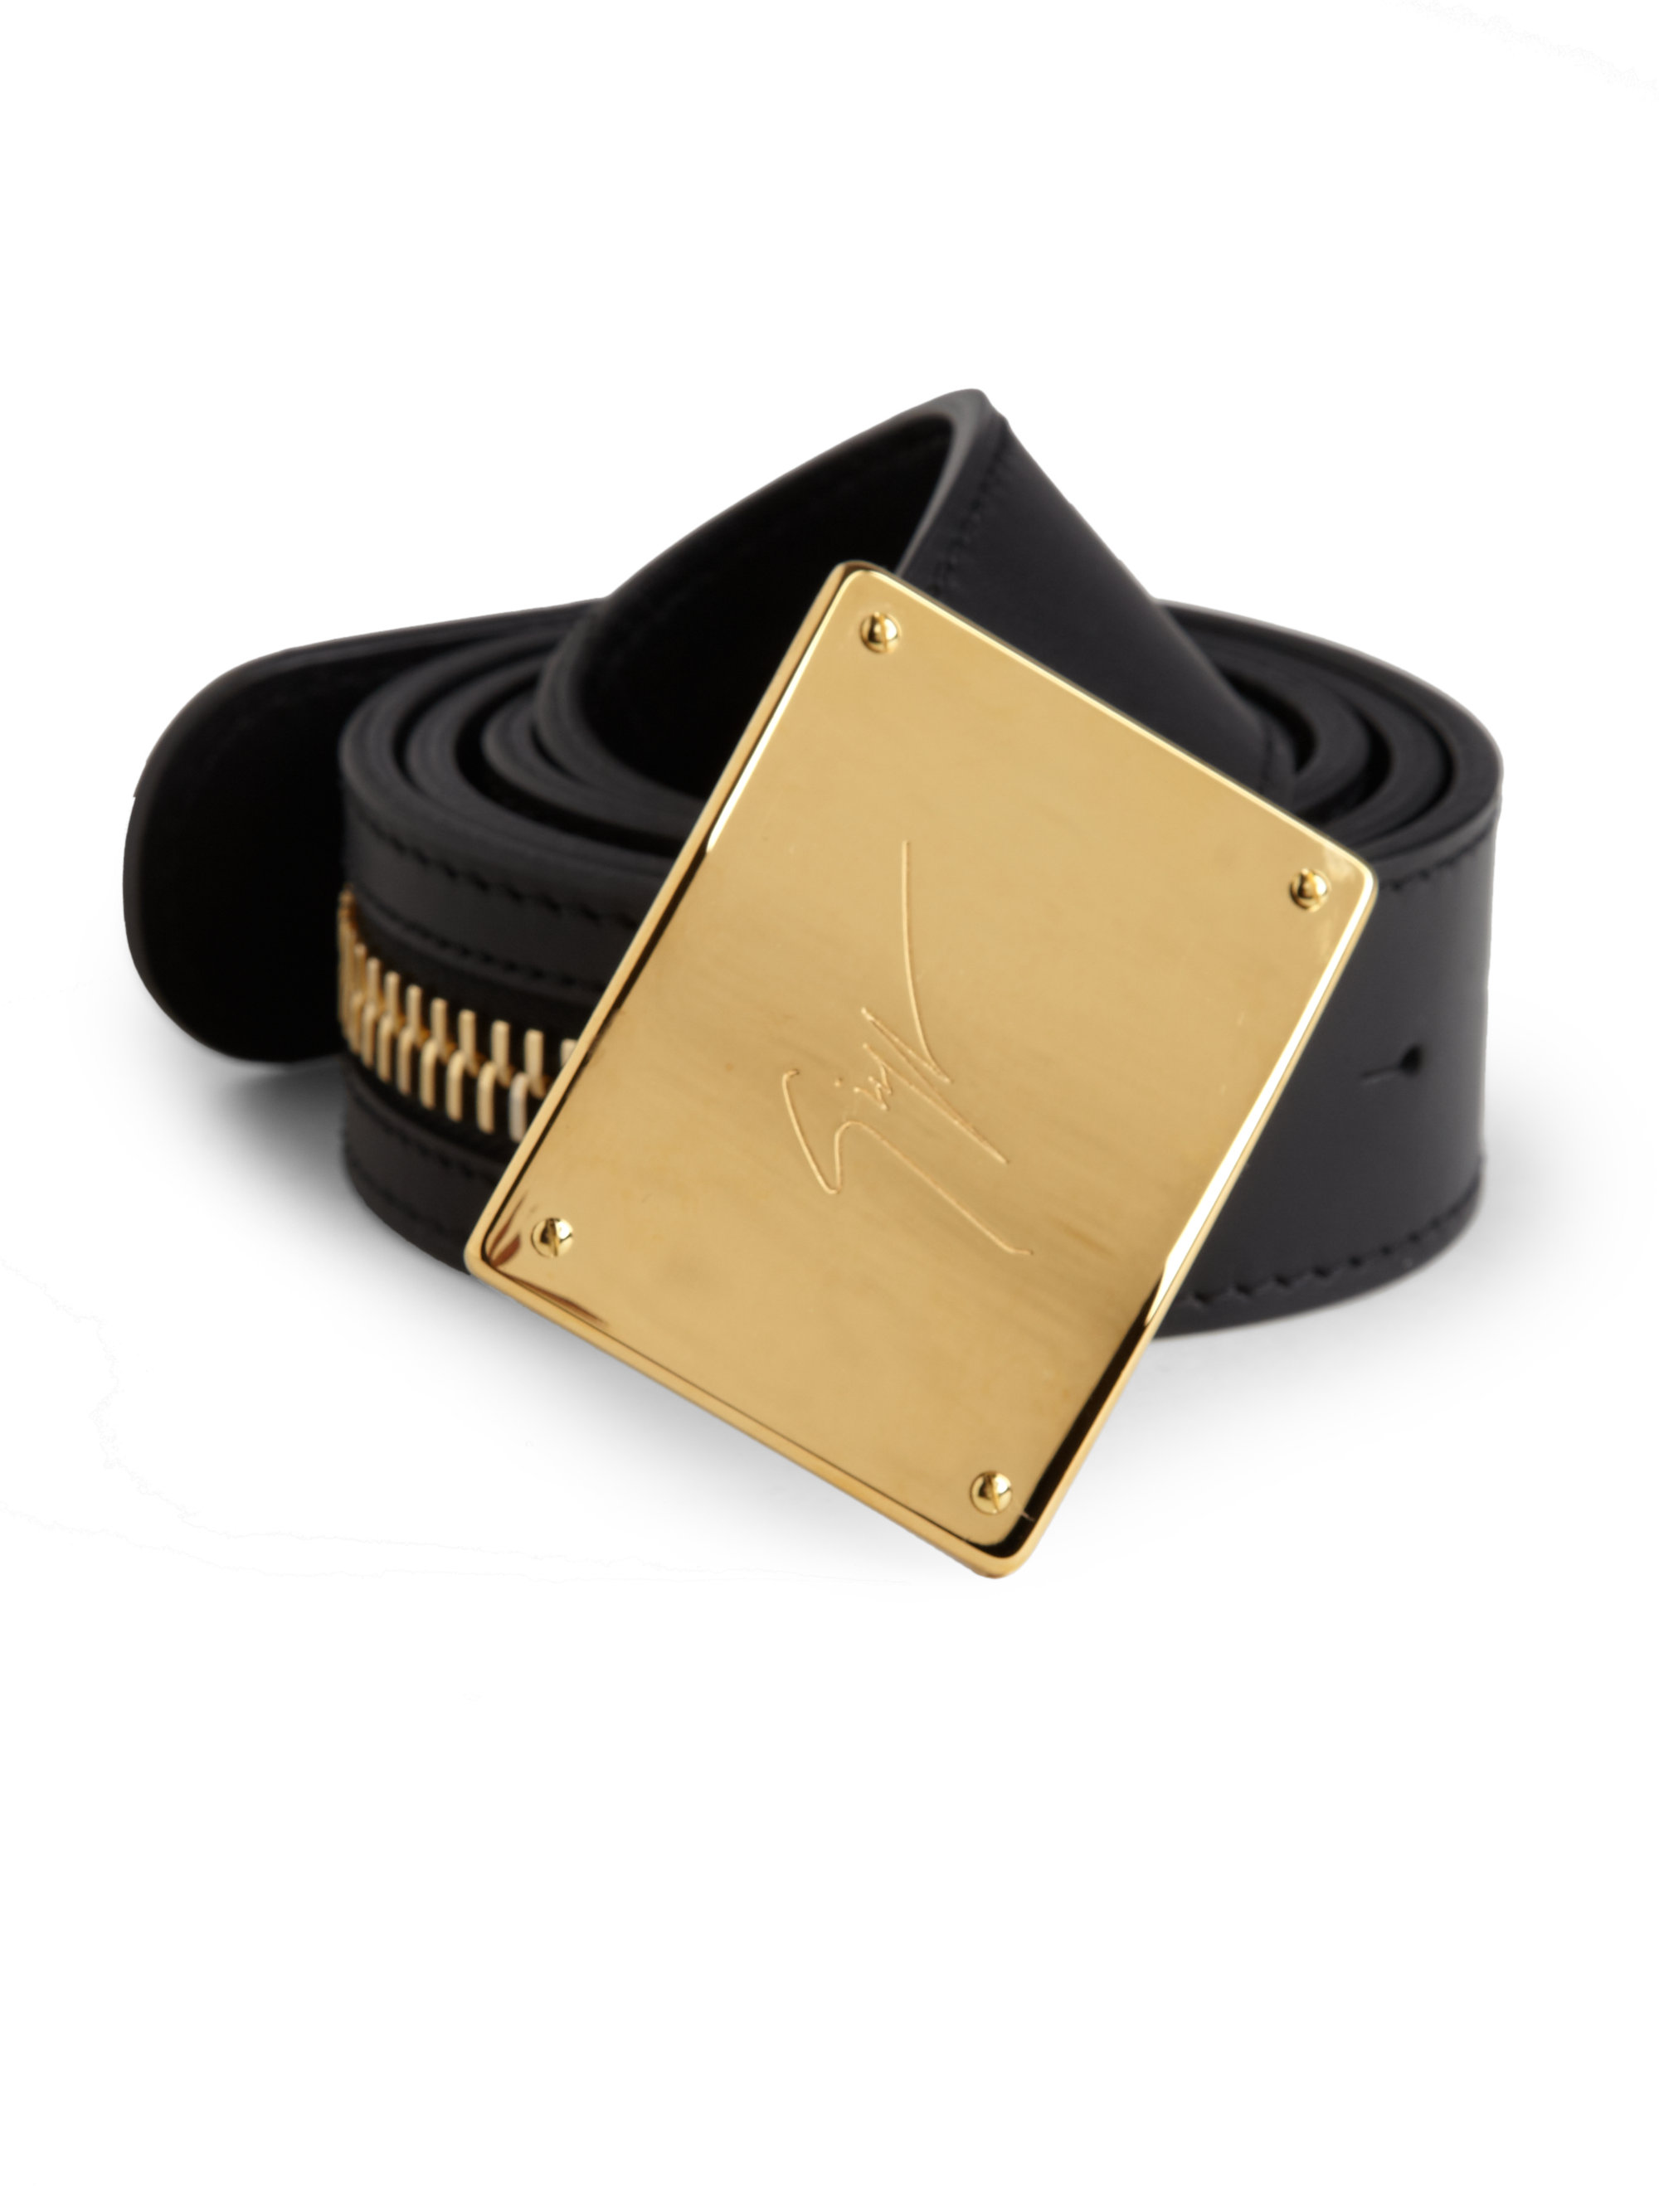 Giuseppe Zanotti Zipper Logo Belt in Black Gold (Black) for Men - Lyst